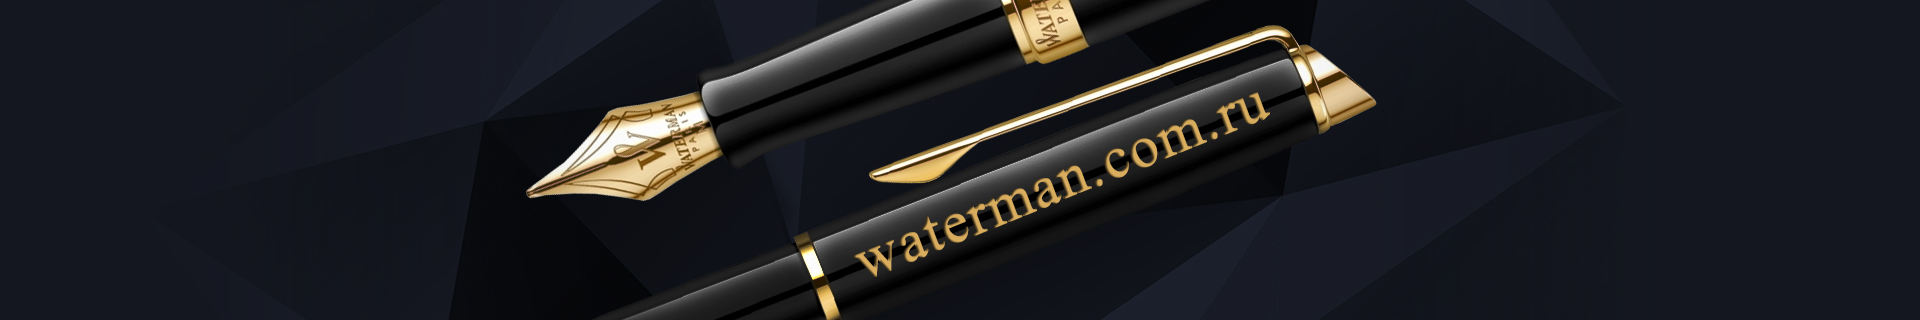 Waterman.com.ru: Бесплатная гравировка ручек Waterman